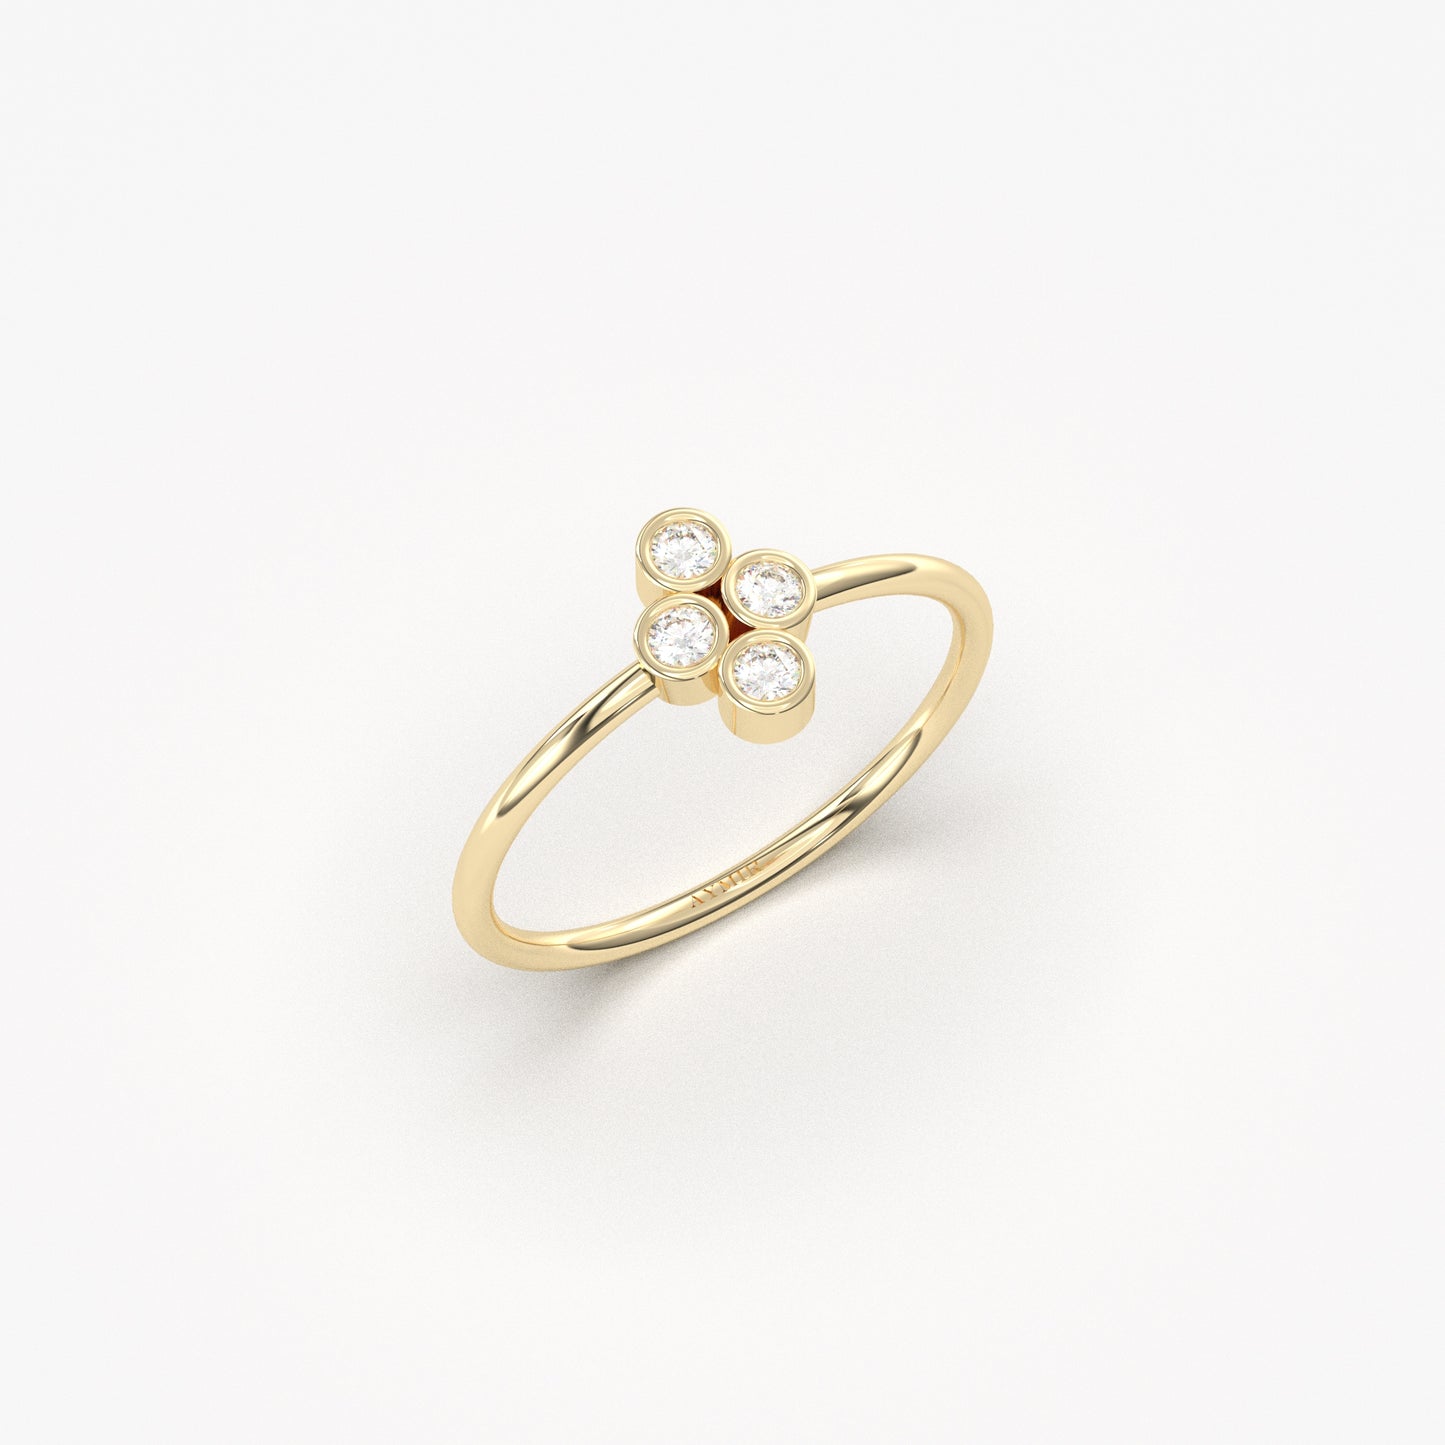 10K Gold Delicate Ring - 2S107